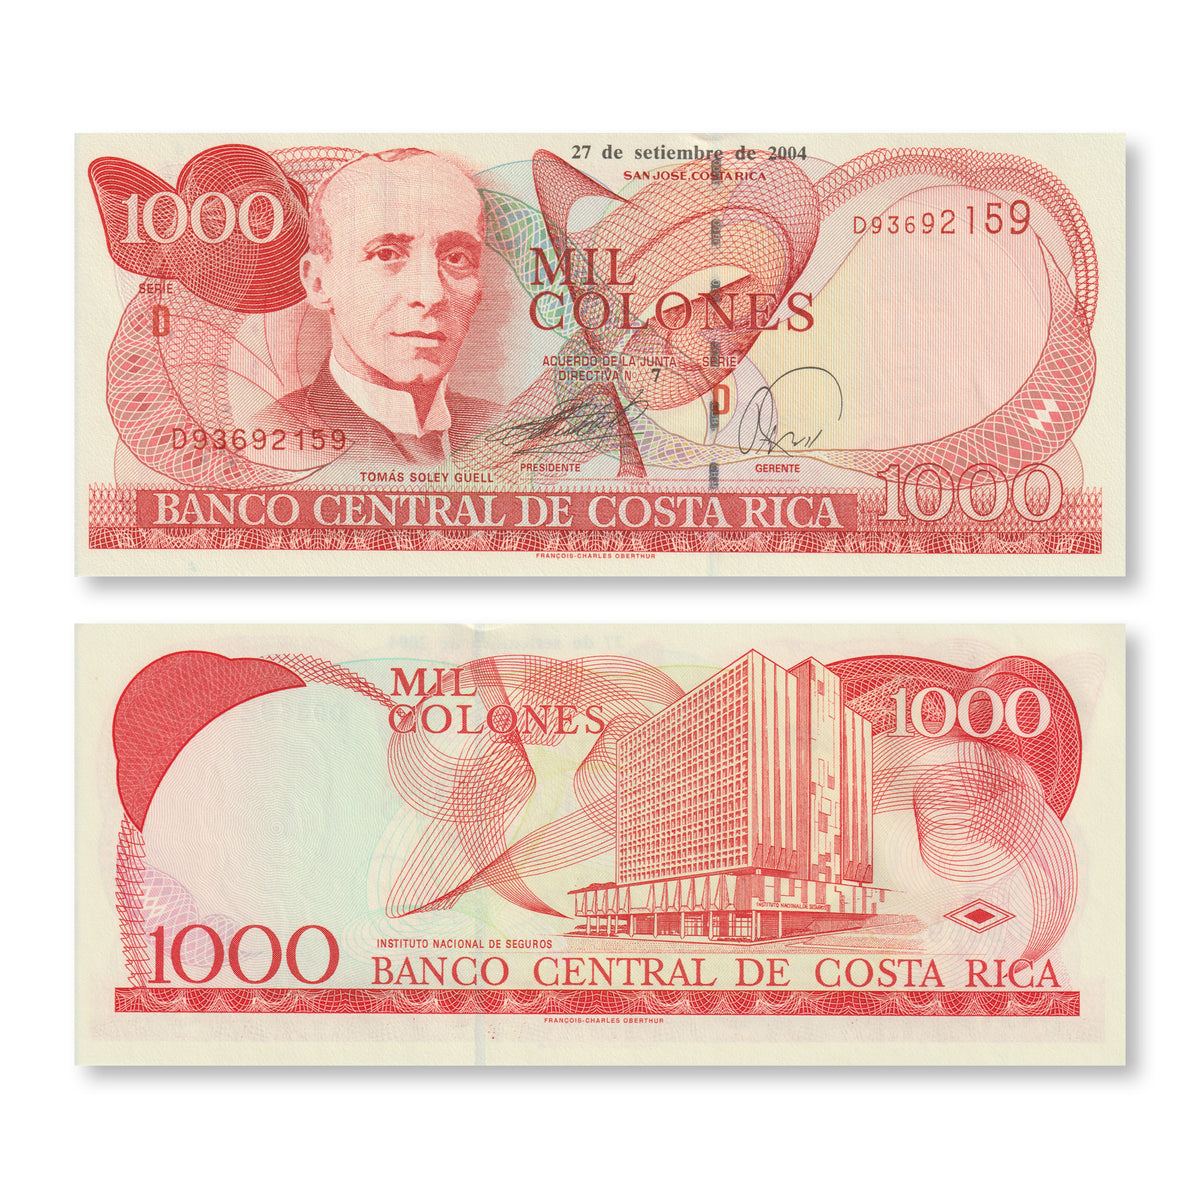 Costa Rica 1000 Colones, 2004, B546e, P264e, UNC - Robert's World Money - World Banknotes